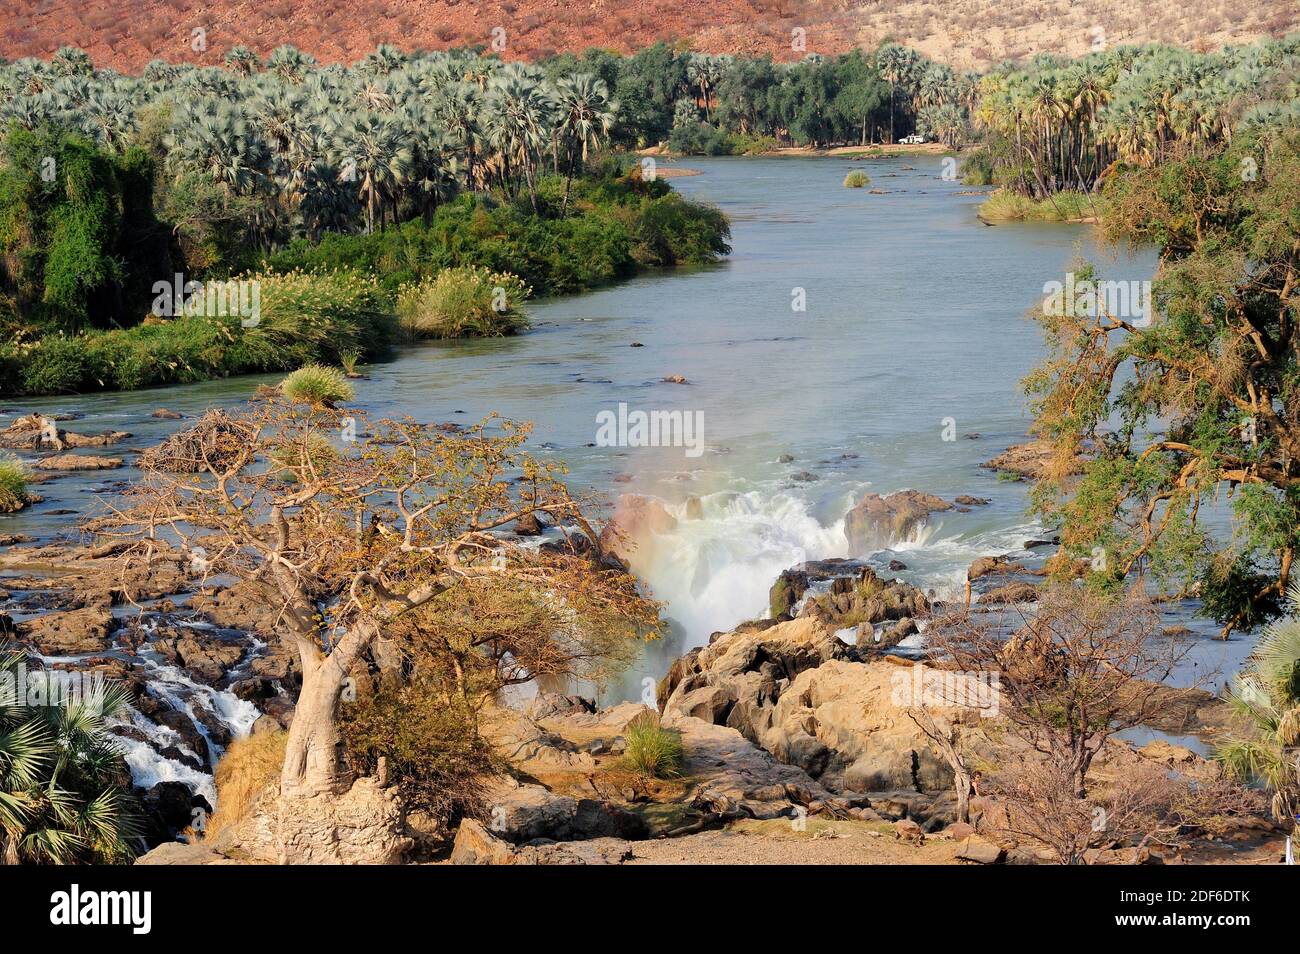 Cascate di Epupa e fiume Kunene, confine tra Angola e Namibia. Foresta ripariana con palma reale del ventilatore (Hyphaene petersiana) e baobab. Regione di Kunene, Foto Stock